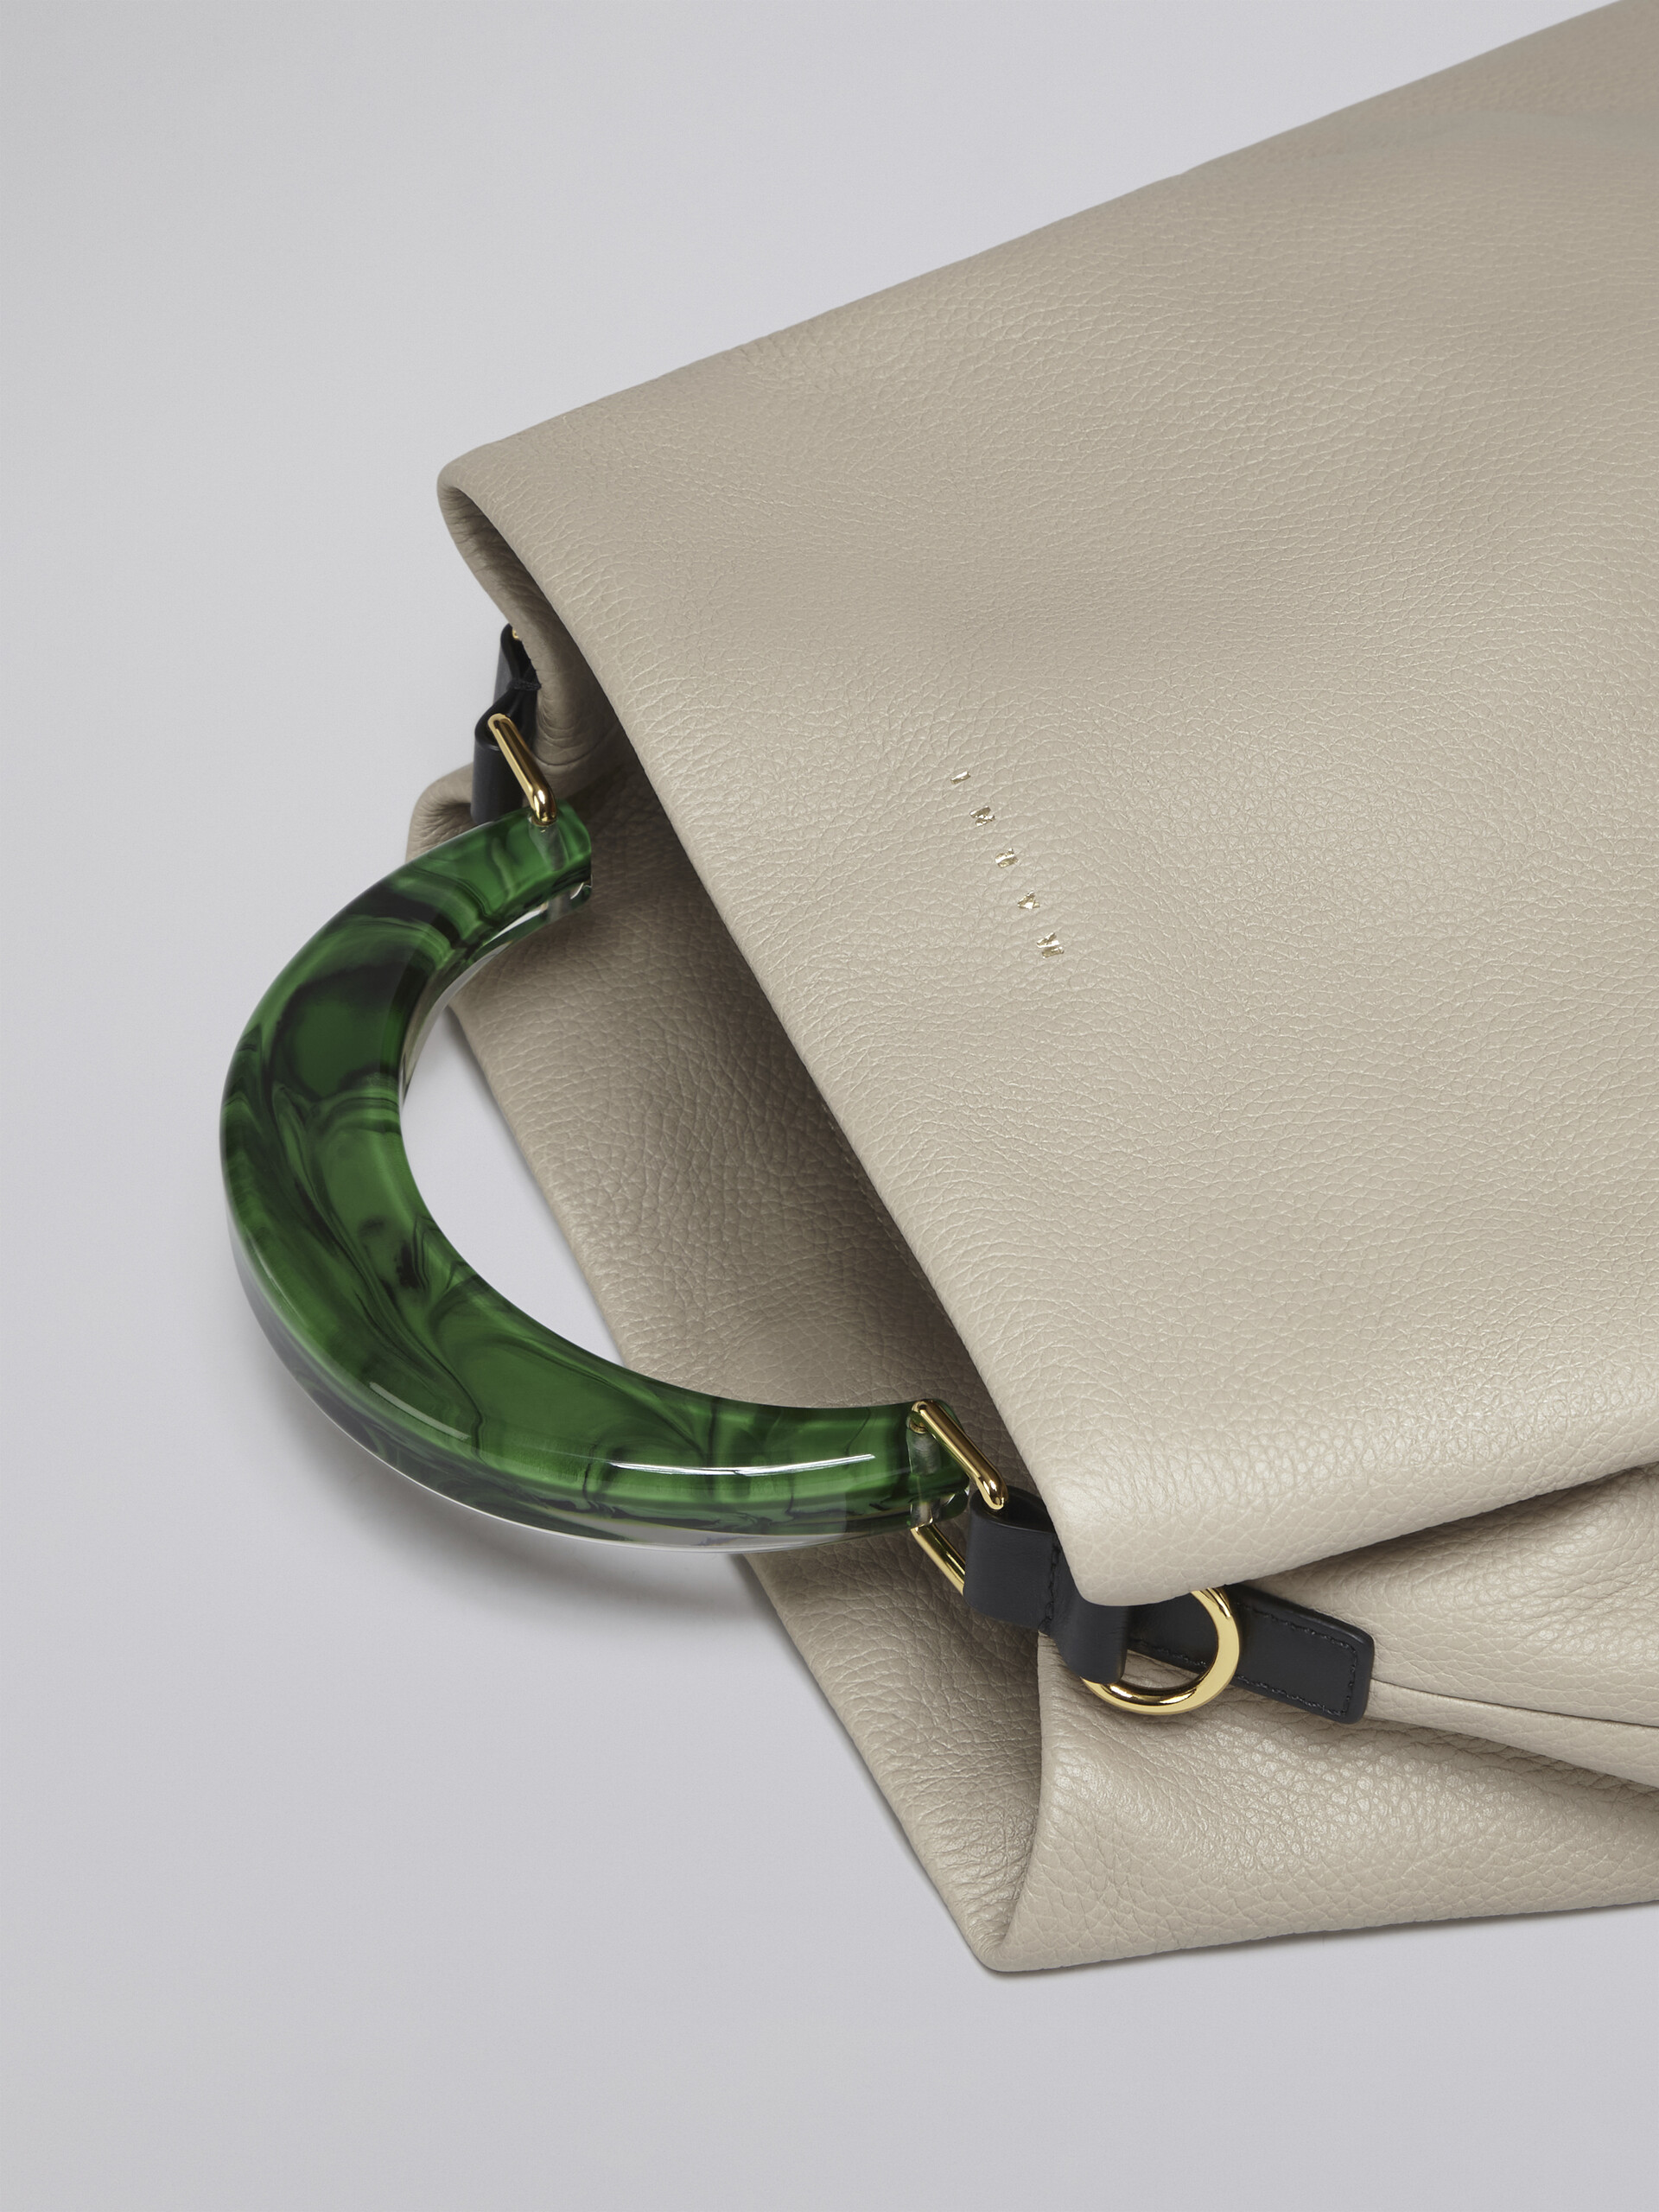 Venice Medium Bag in beige leather - Shoulder Bag - Image 5